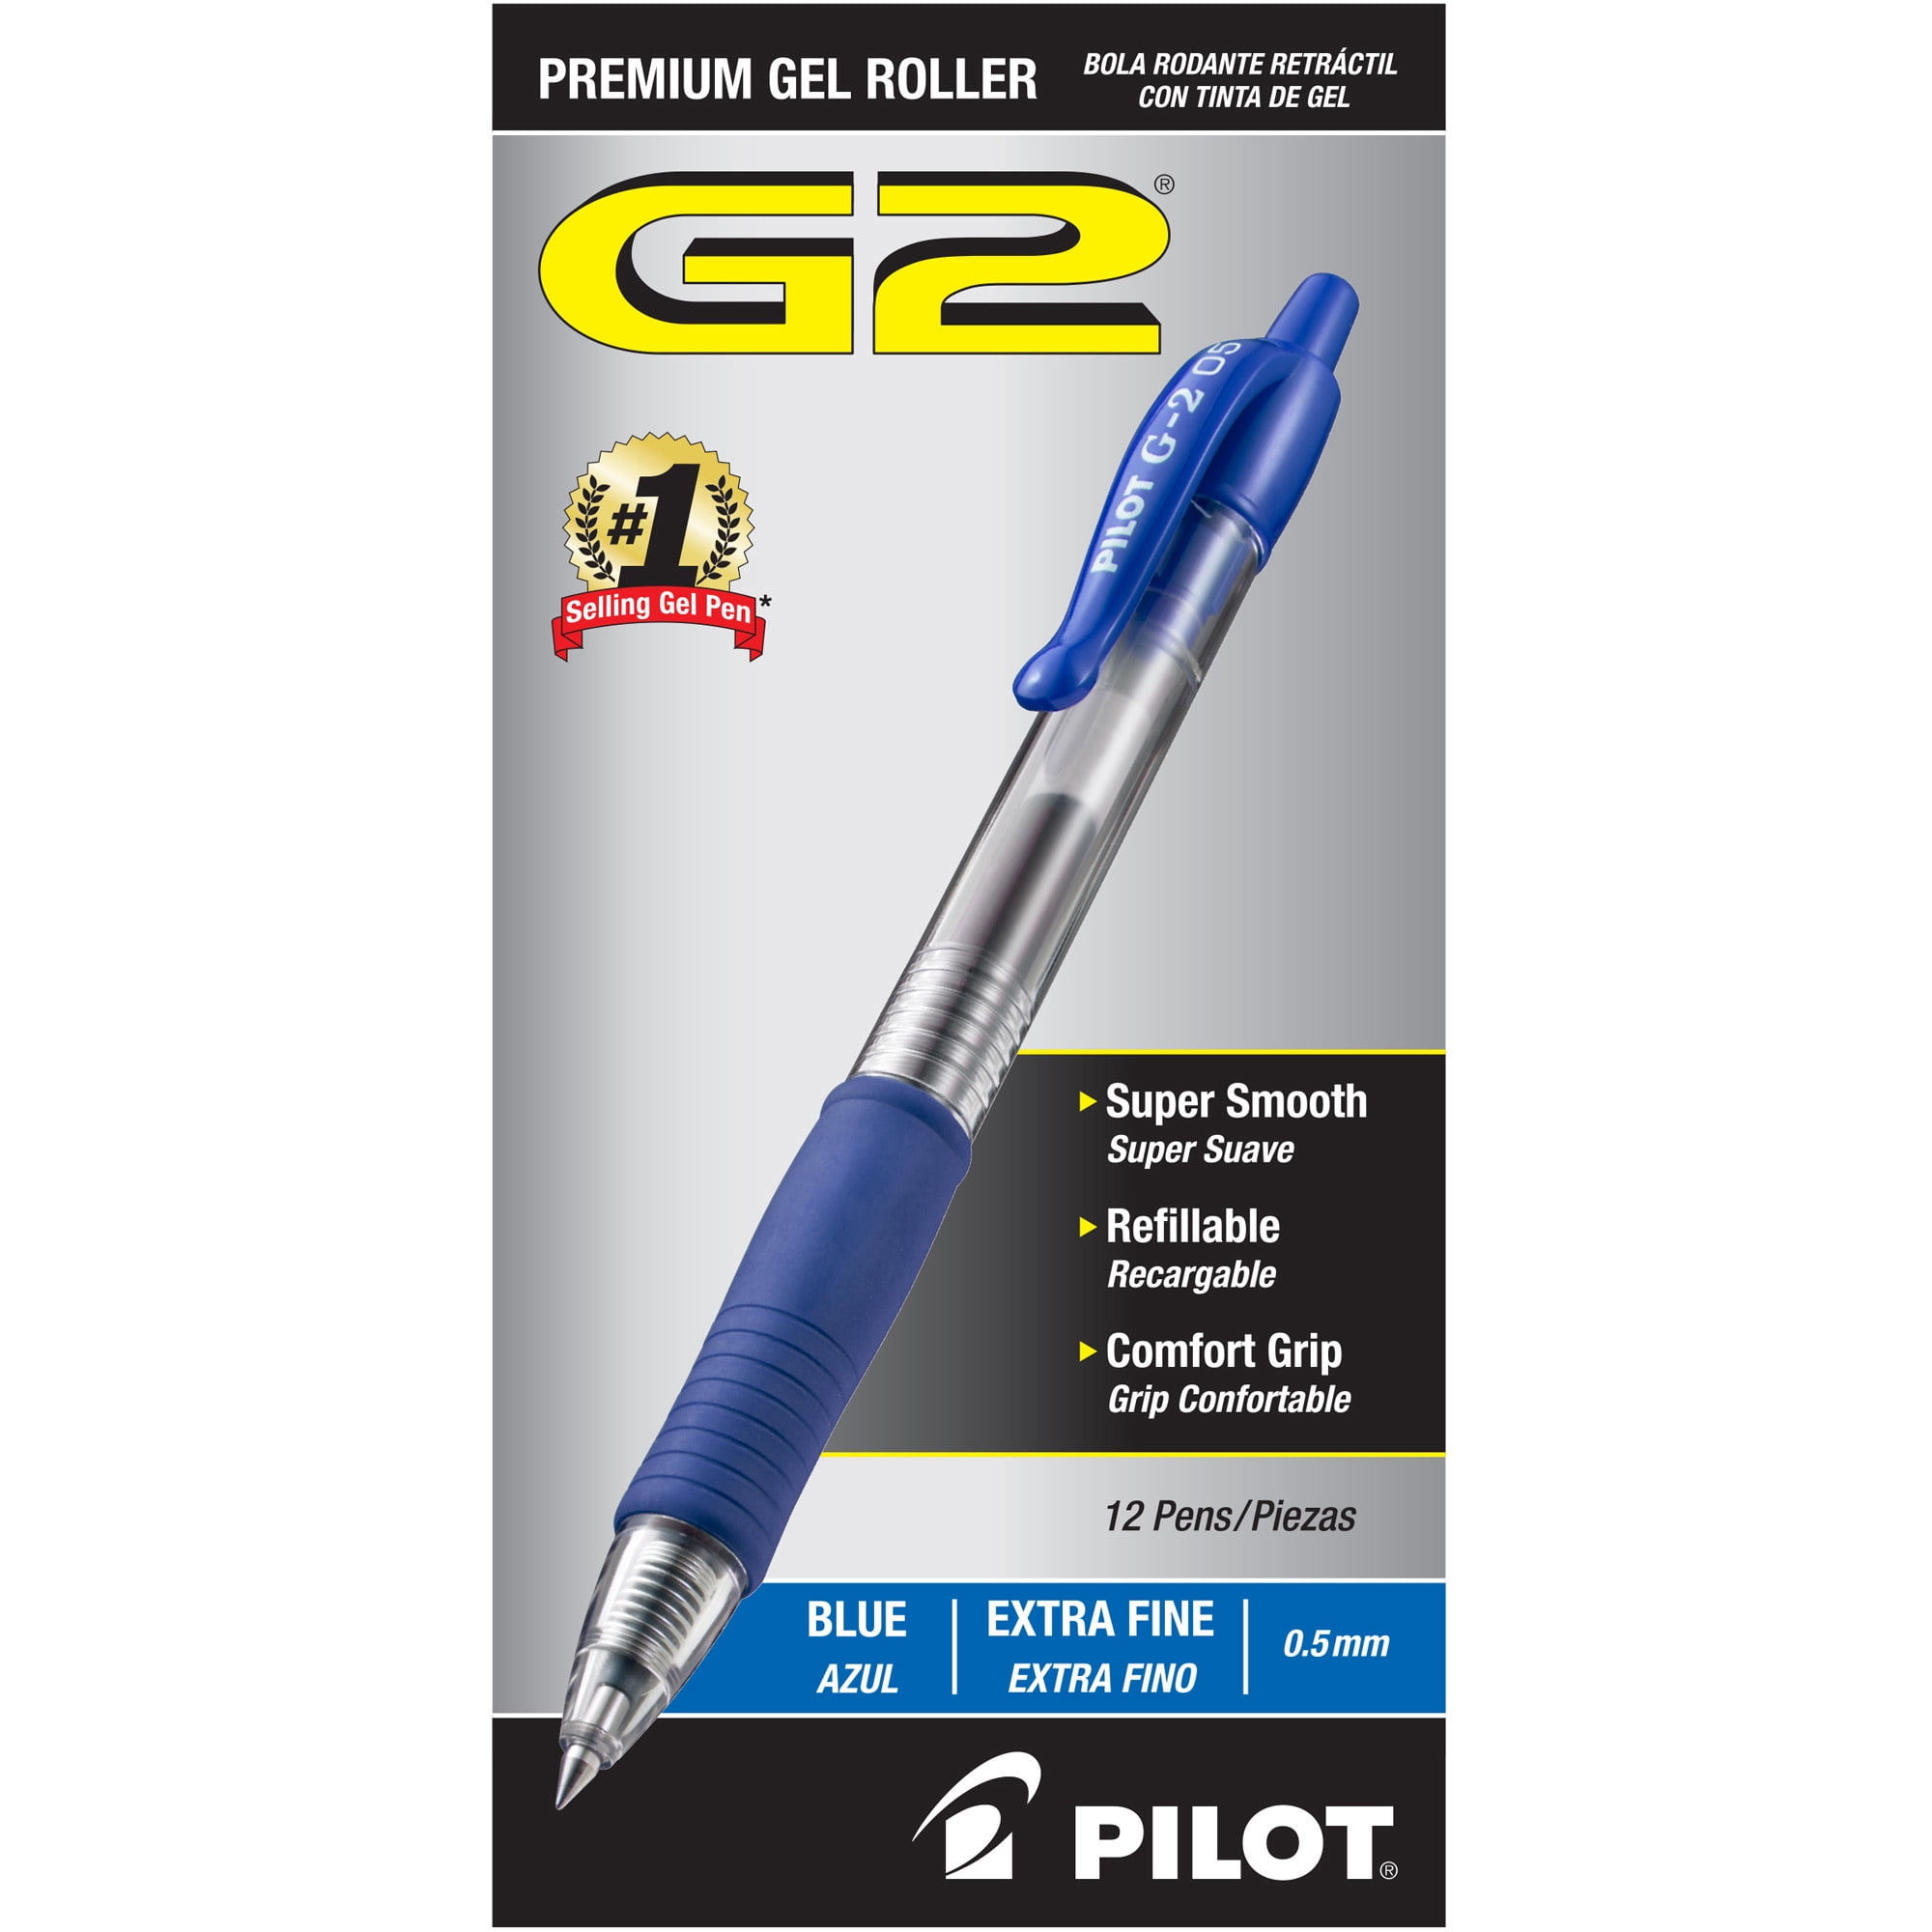 Choose Color & Tip Size Pilot Pen EasyTouch Retractable Ballpoint Pen 